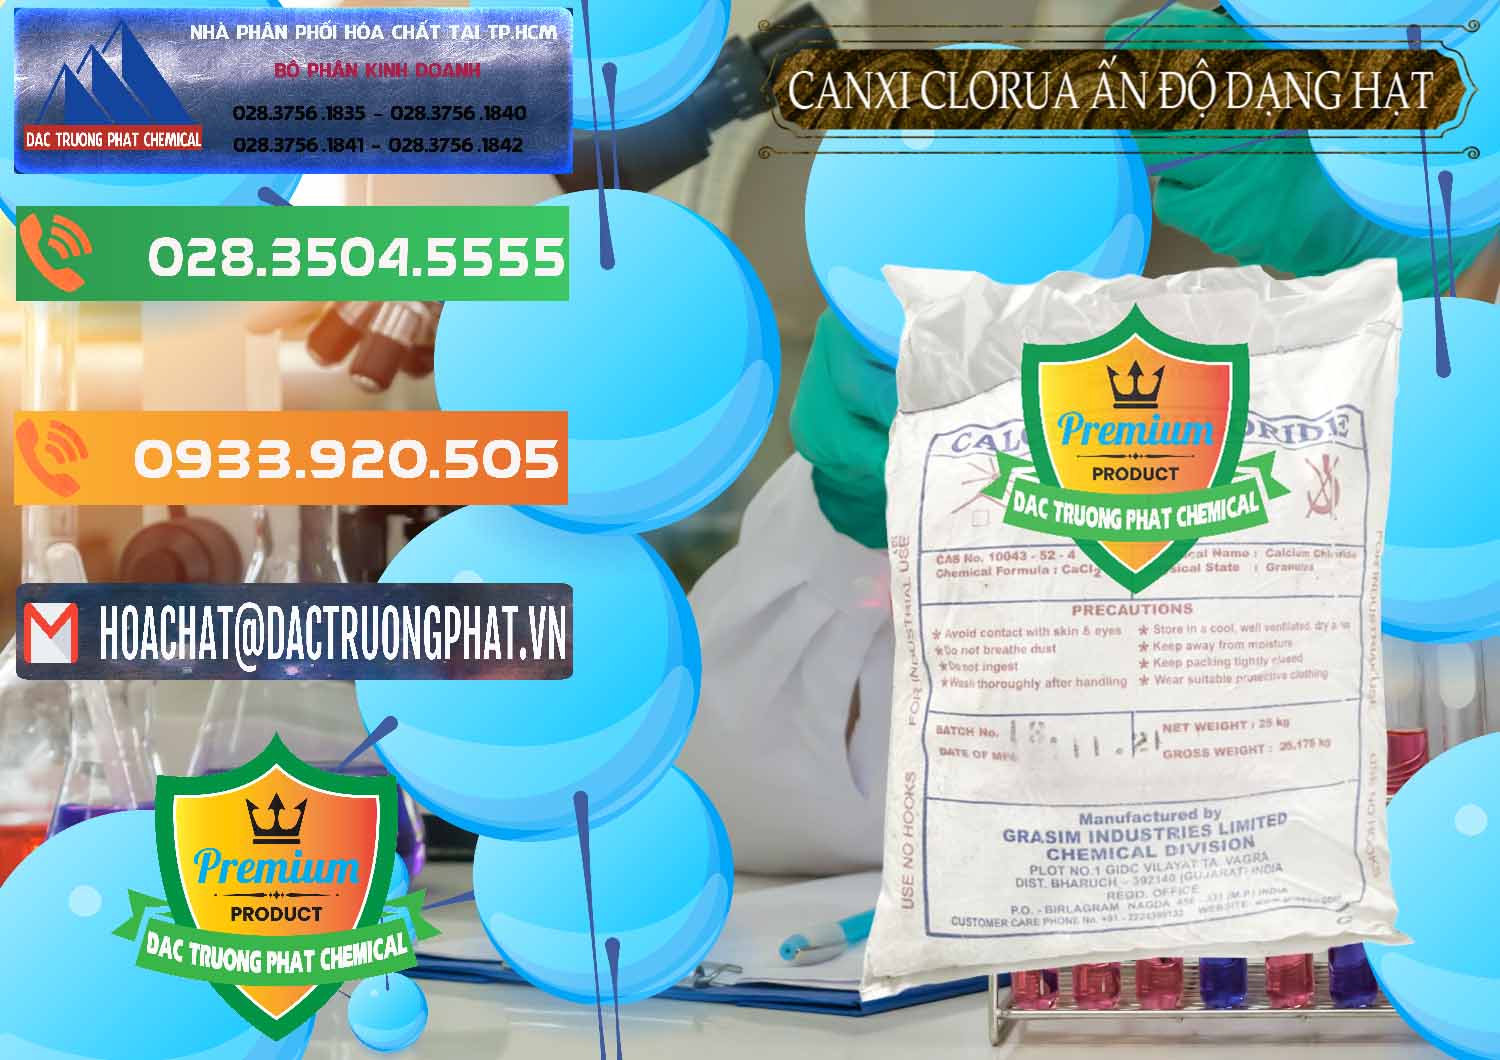 Đơn vị nhập khẩu - bán CaCl2 – Canxi Clorua Dạng Hạt Aditya Birla Grasim Ấn Độ India - 0418 - Chuyên nhập khẩu & cung cấp hóa chất tại TP.HCM - hoachatxulynuoc.com.vn